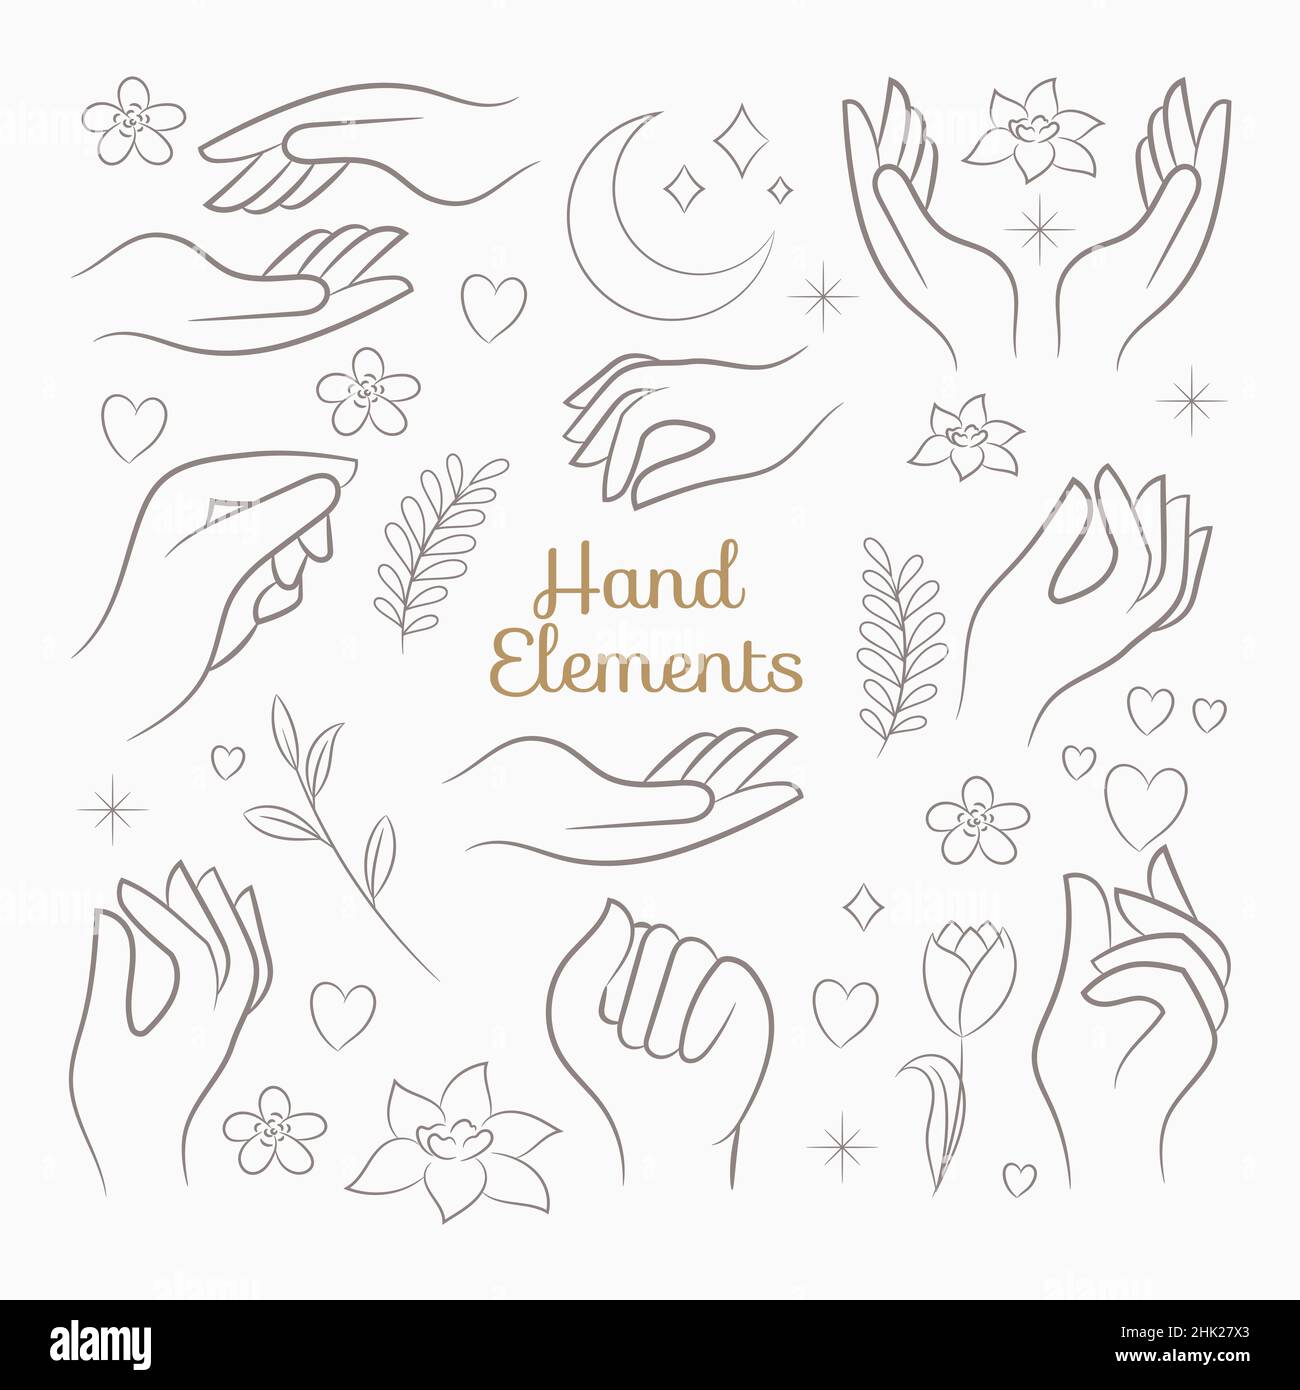 Handgezeichnete Skizze der Handgesten-Illustration Stock Vektor